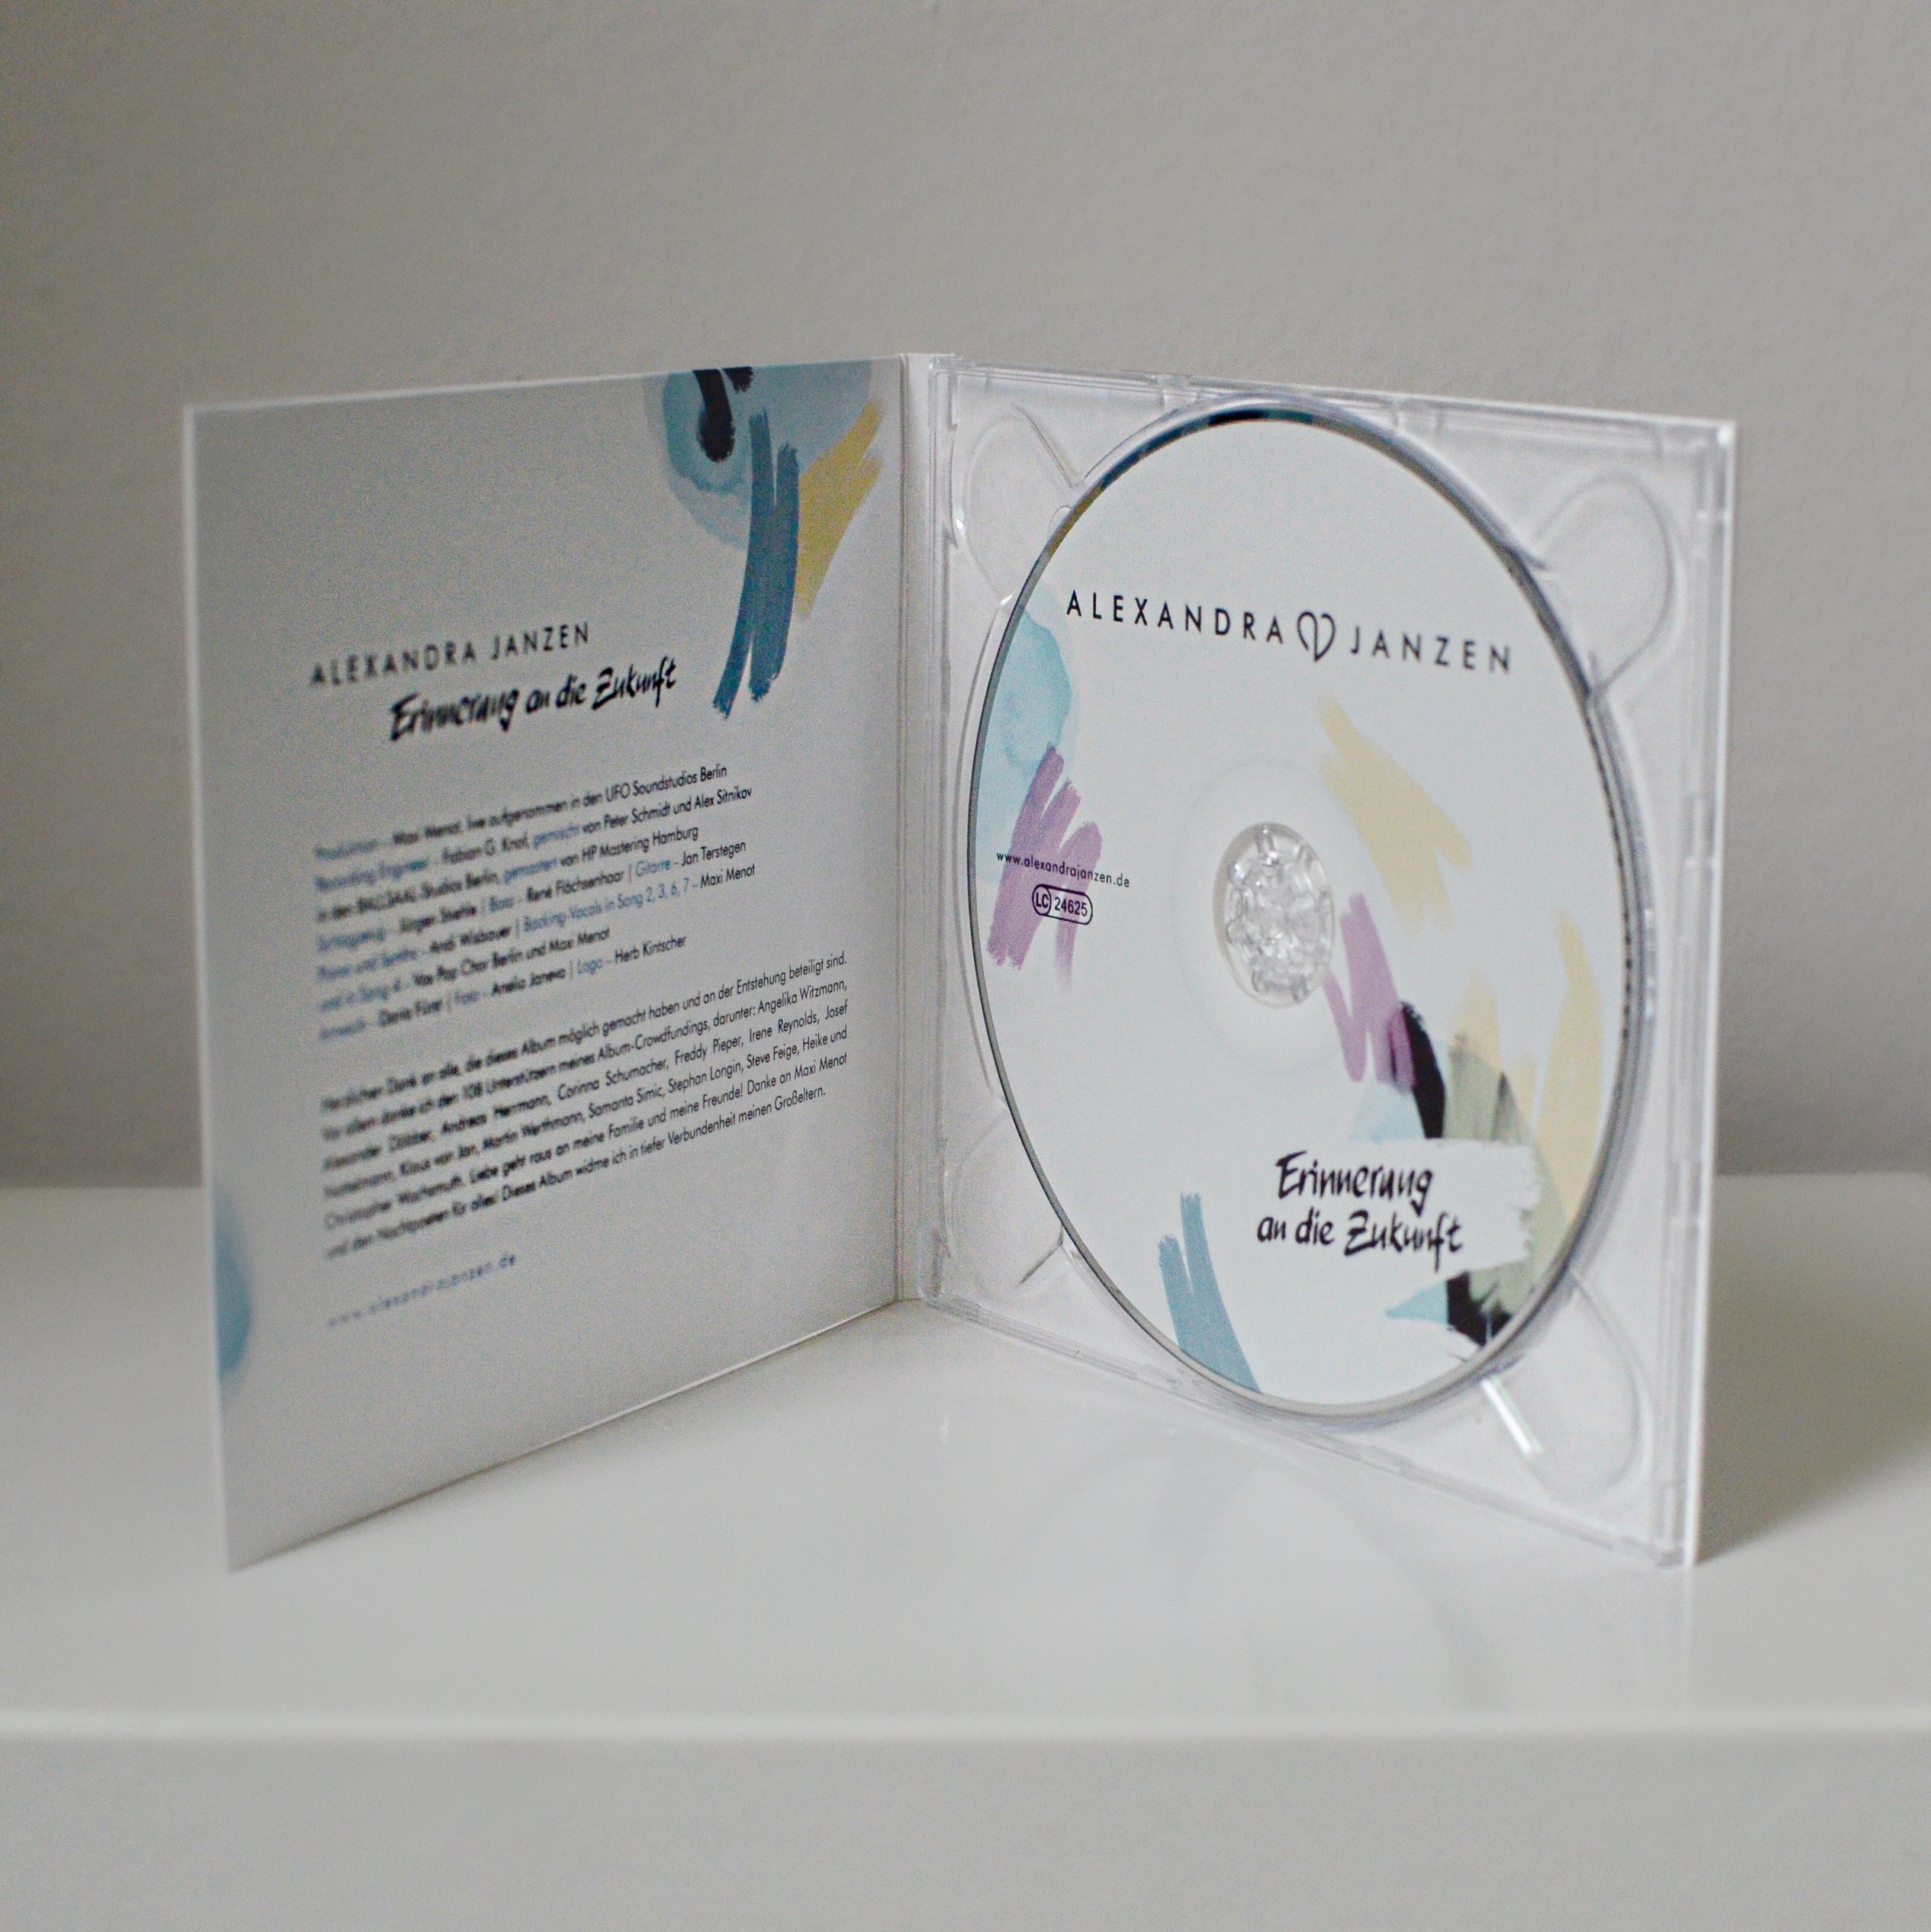 Album "Erinnerung an die Zukunft" - physische CD